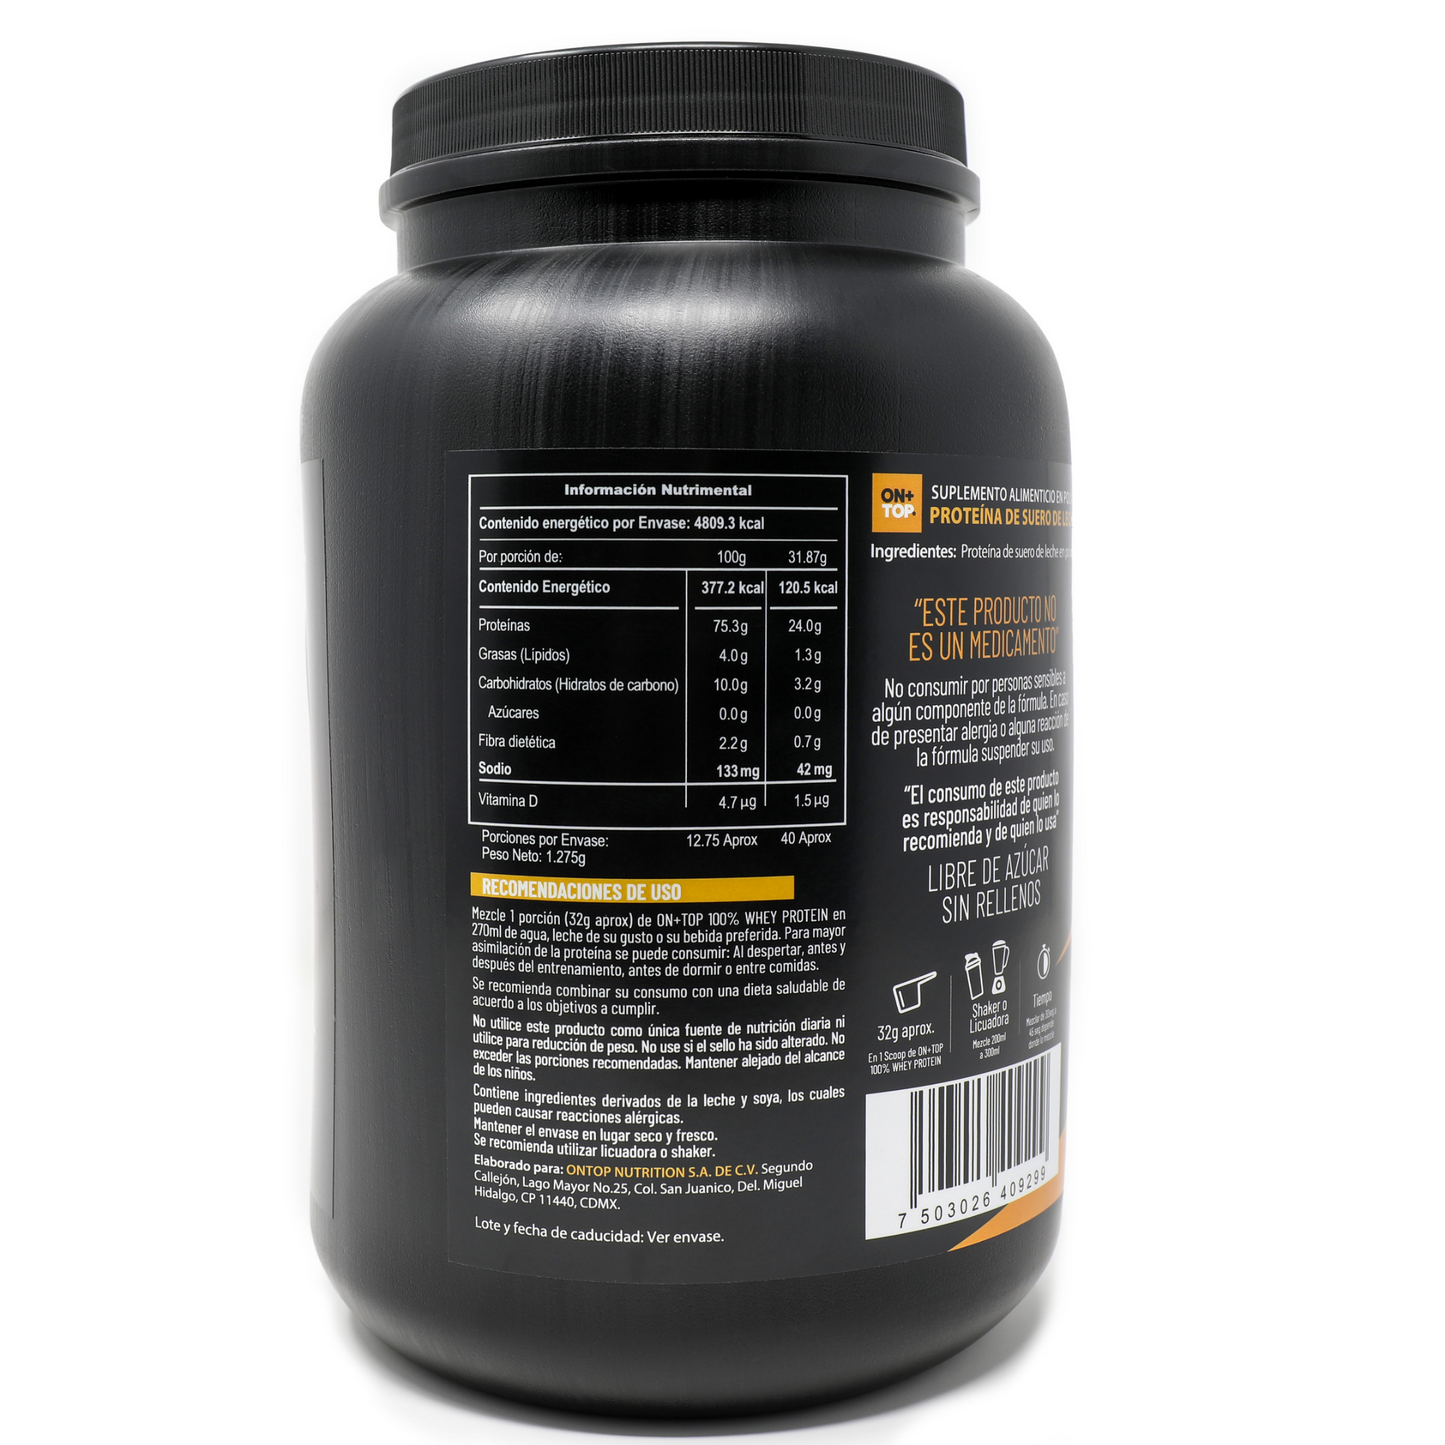 Proteína en Polvo 100% Whey Protein sabor Natural 1.275g.